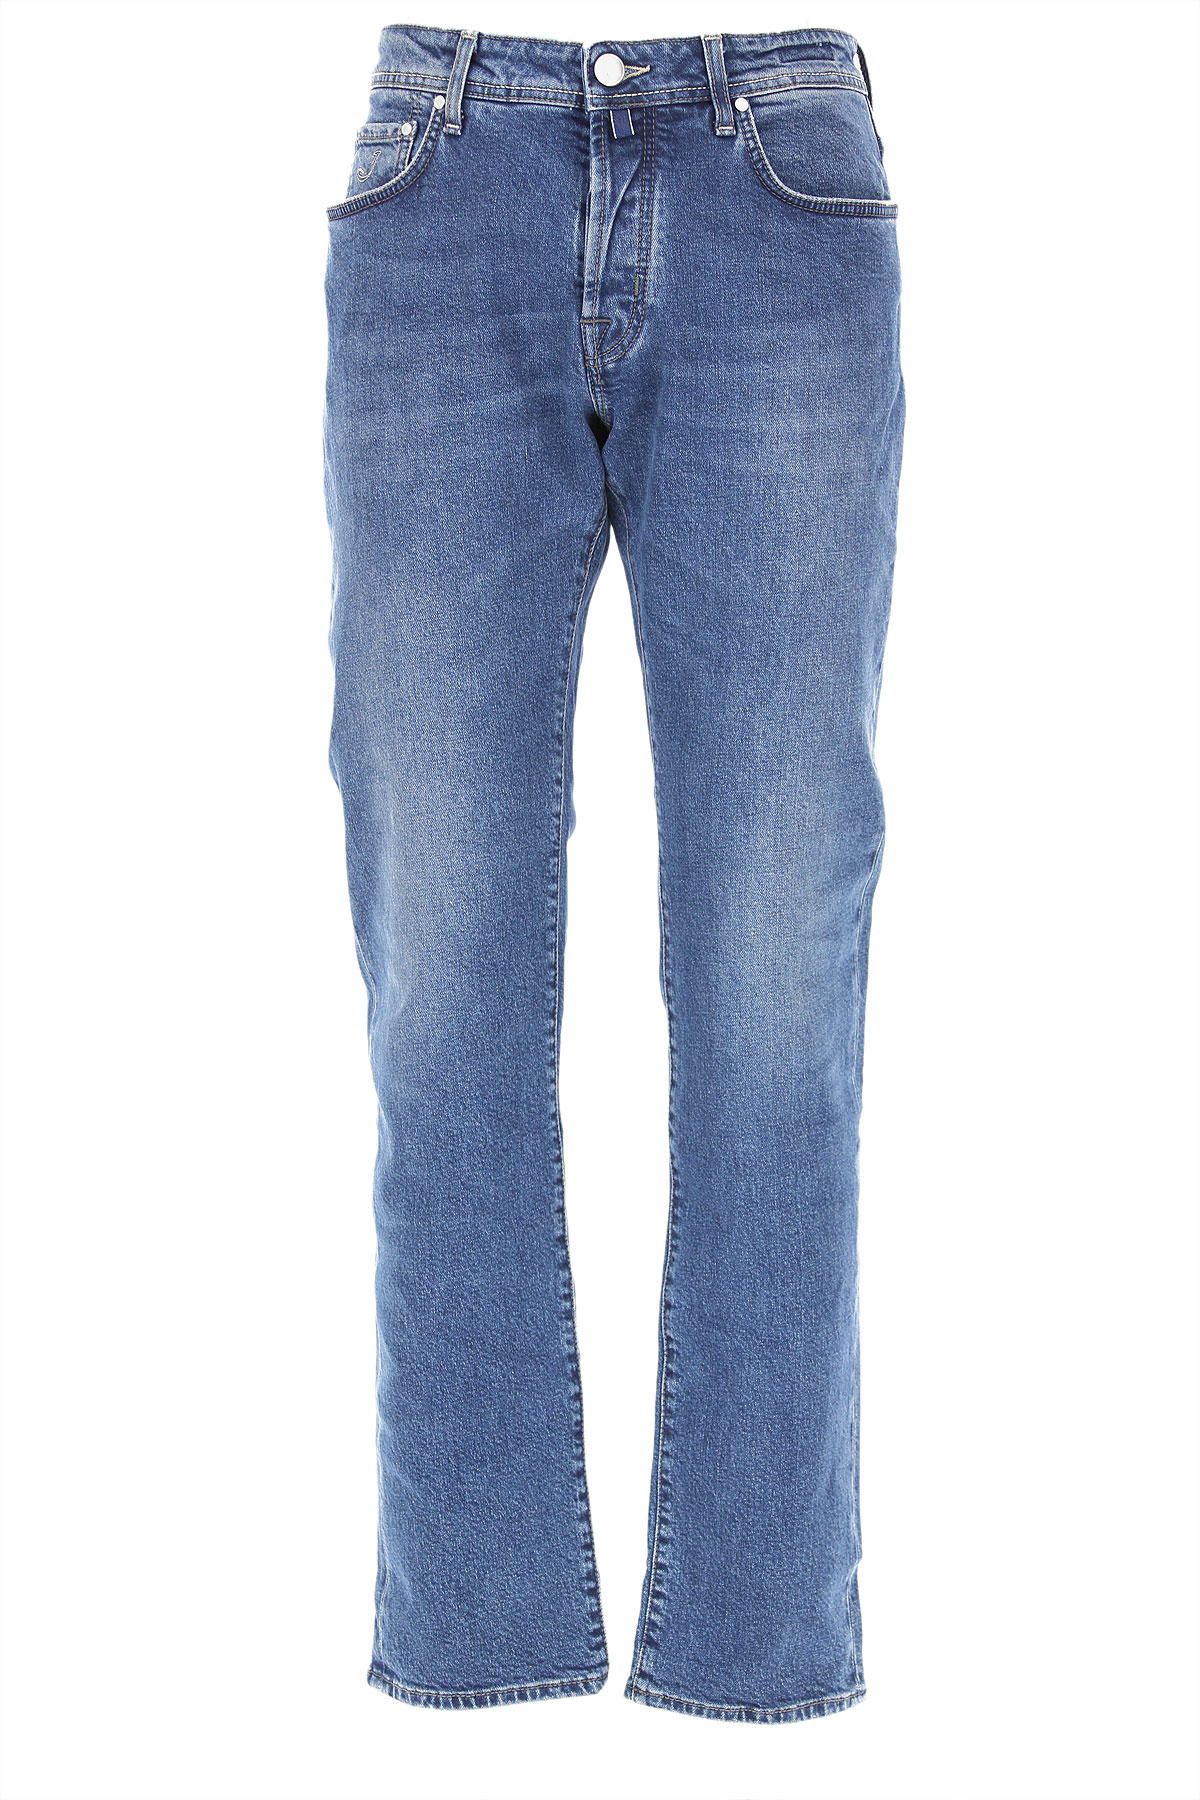 Jacob Cohen Jeans, Bluejeans, Denim Jeans für Herren Günstig im Sale, Denim Blau, Baumwolle, 2017, 46 48 49 50 51 52 54